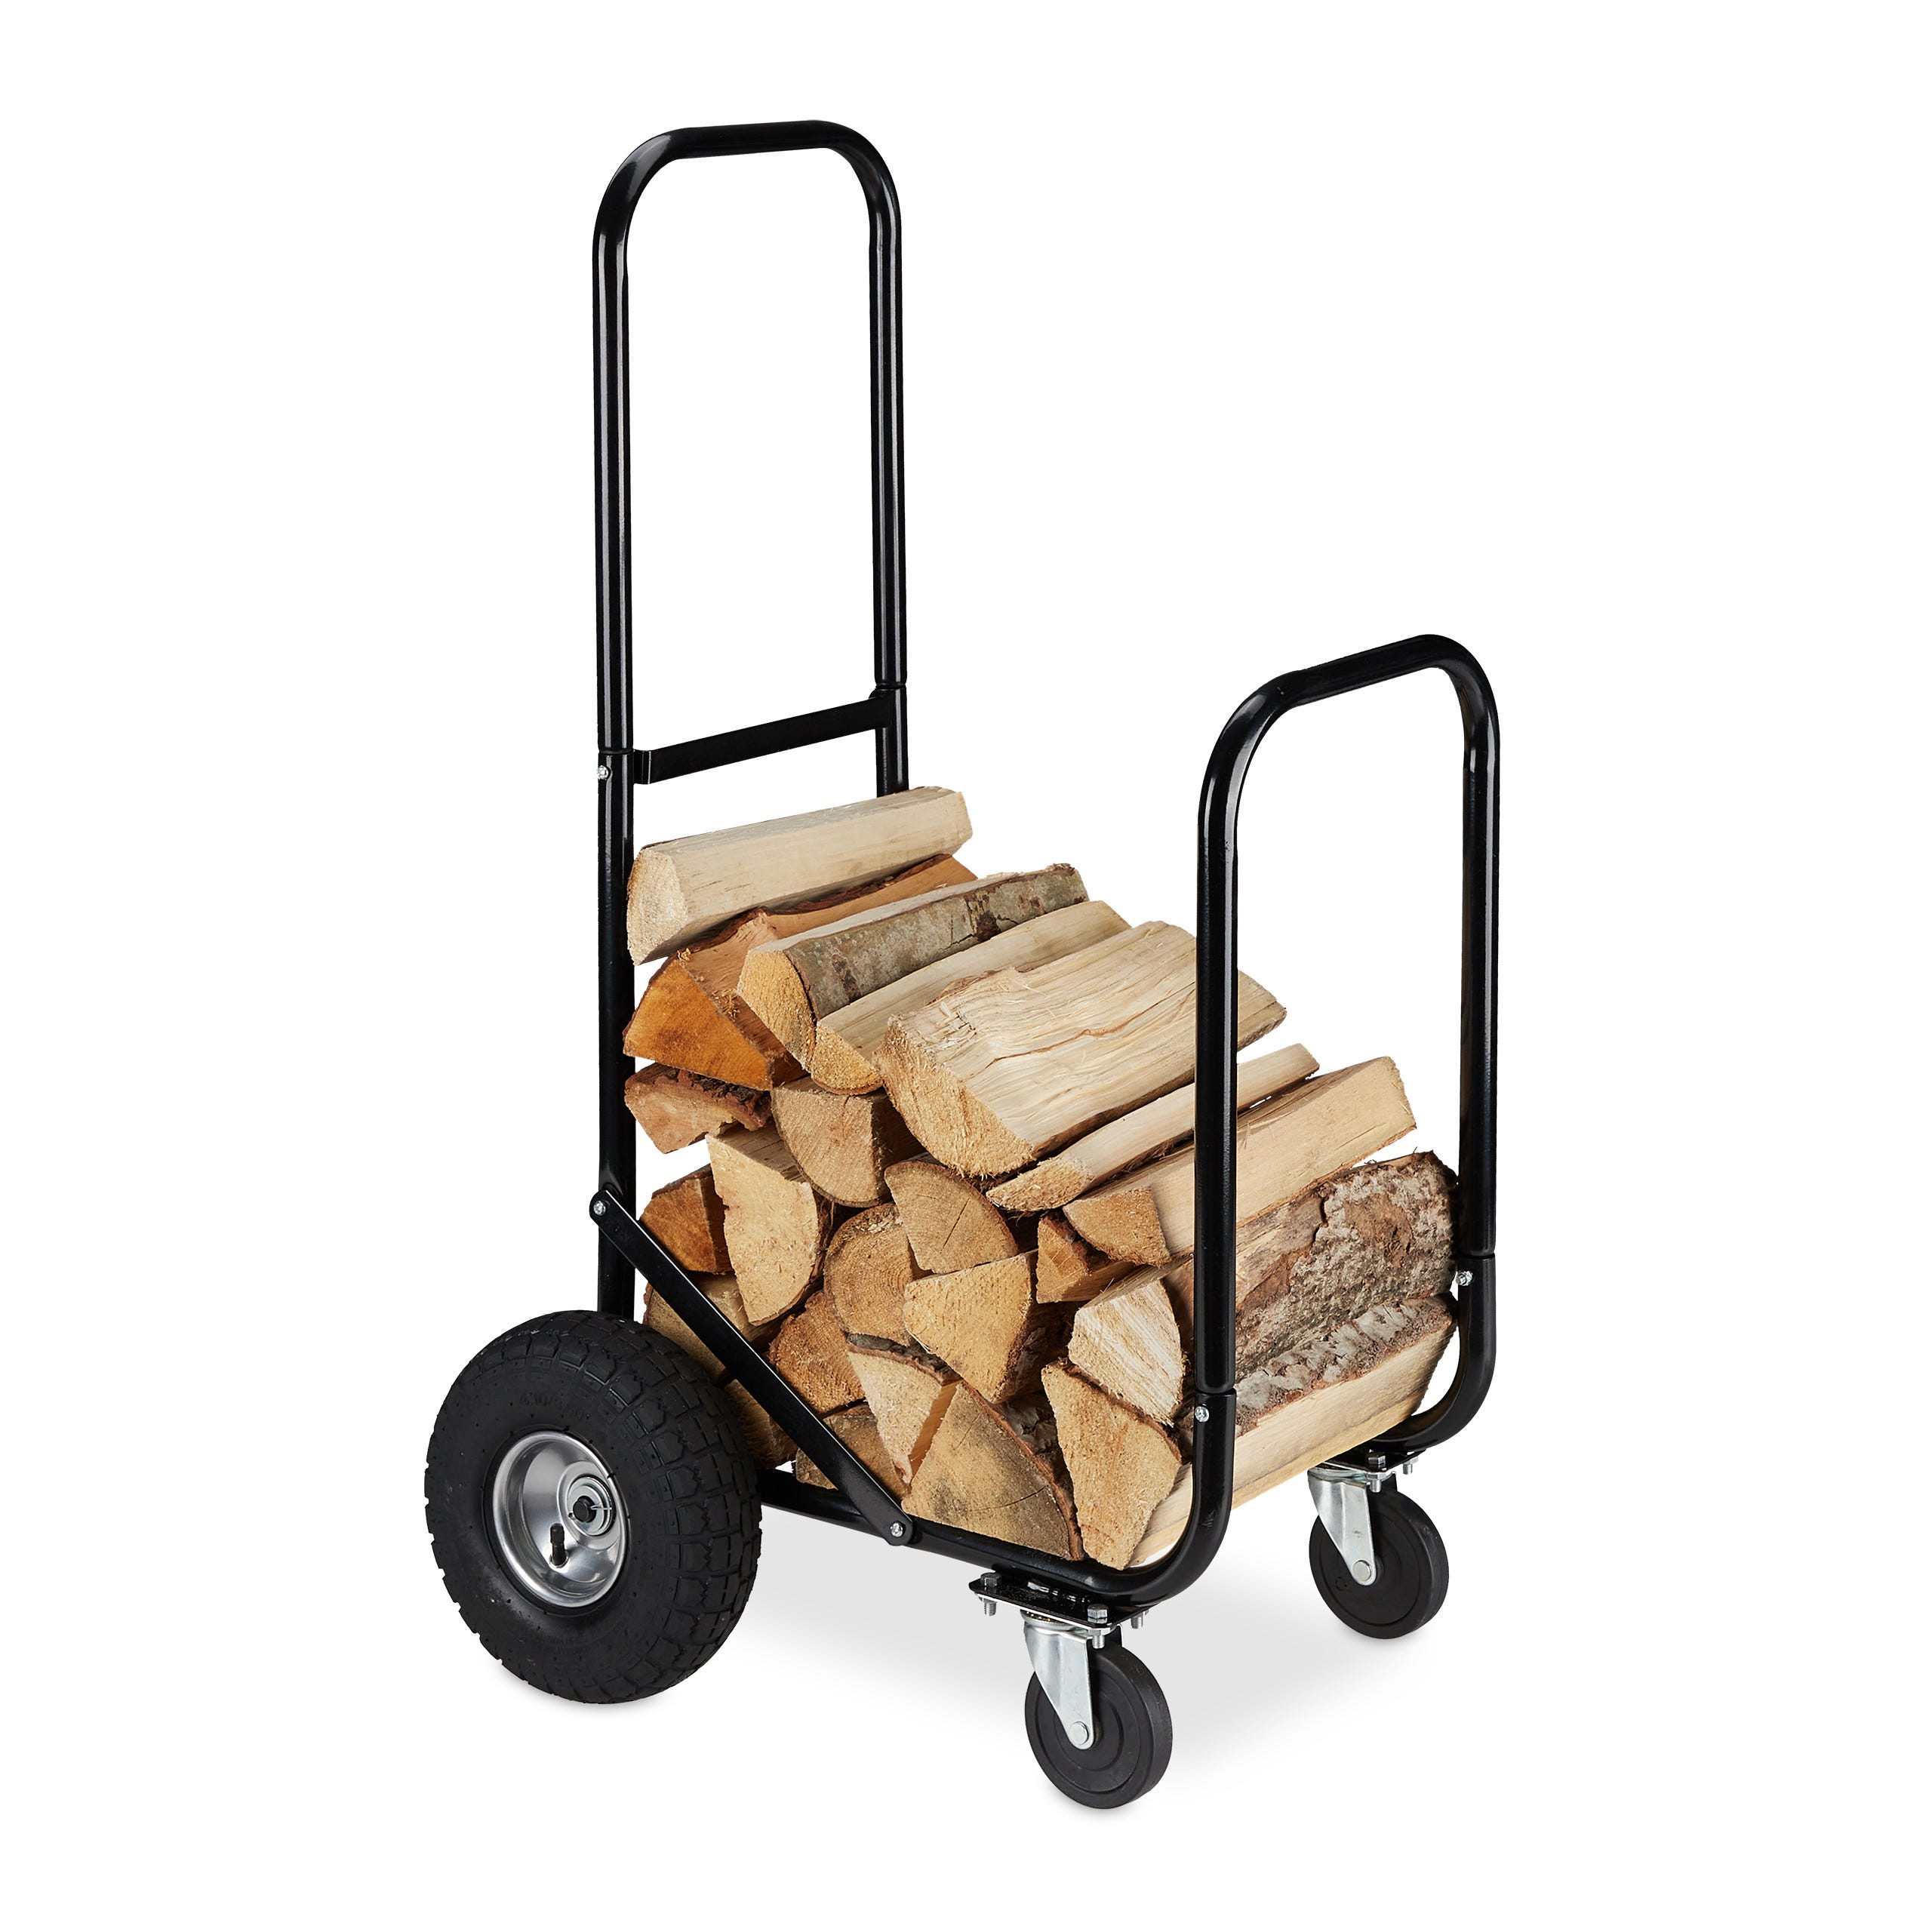 Relaxdays Chariot pour bûches en bois, en acier, 107,5 x 52 x 58